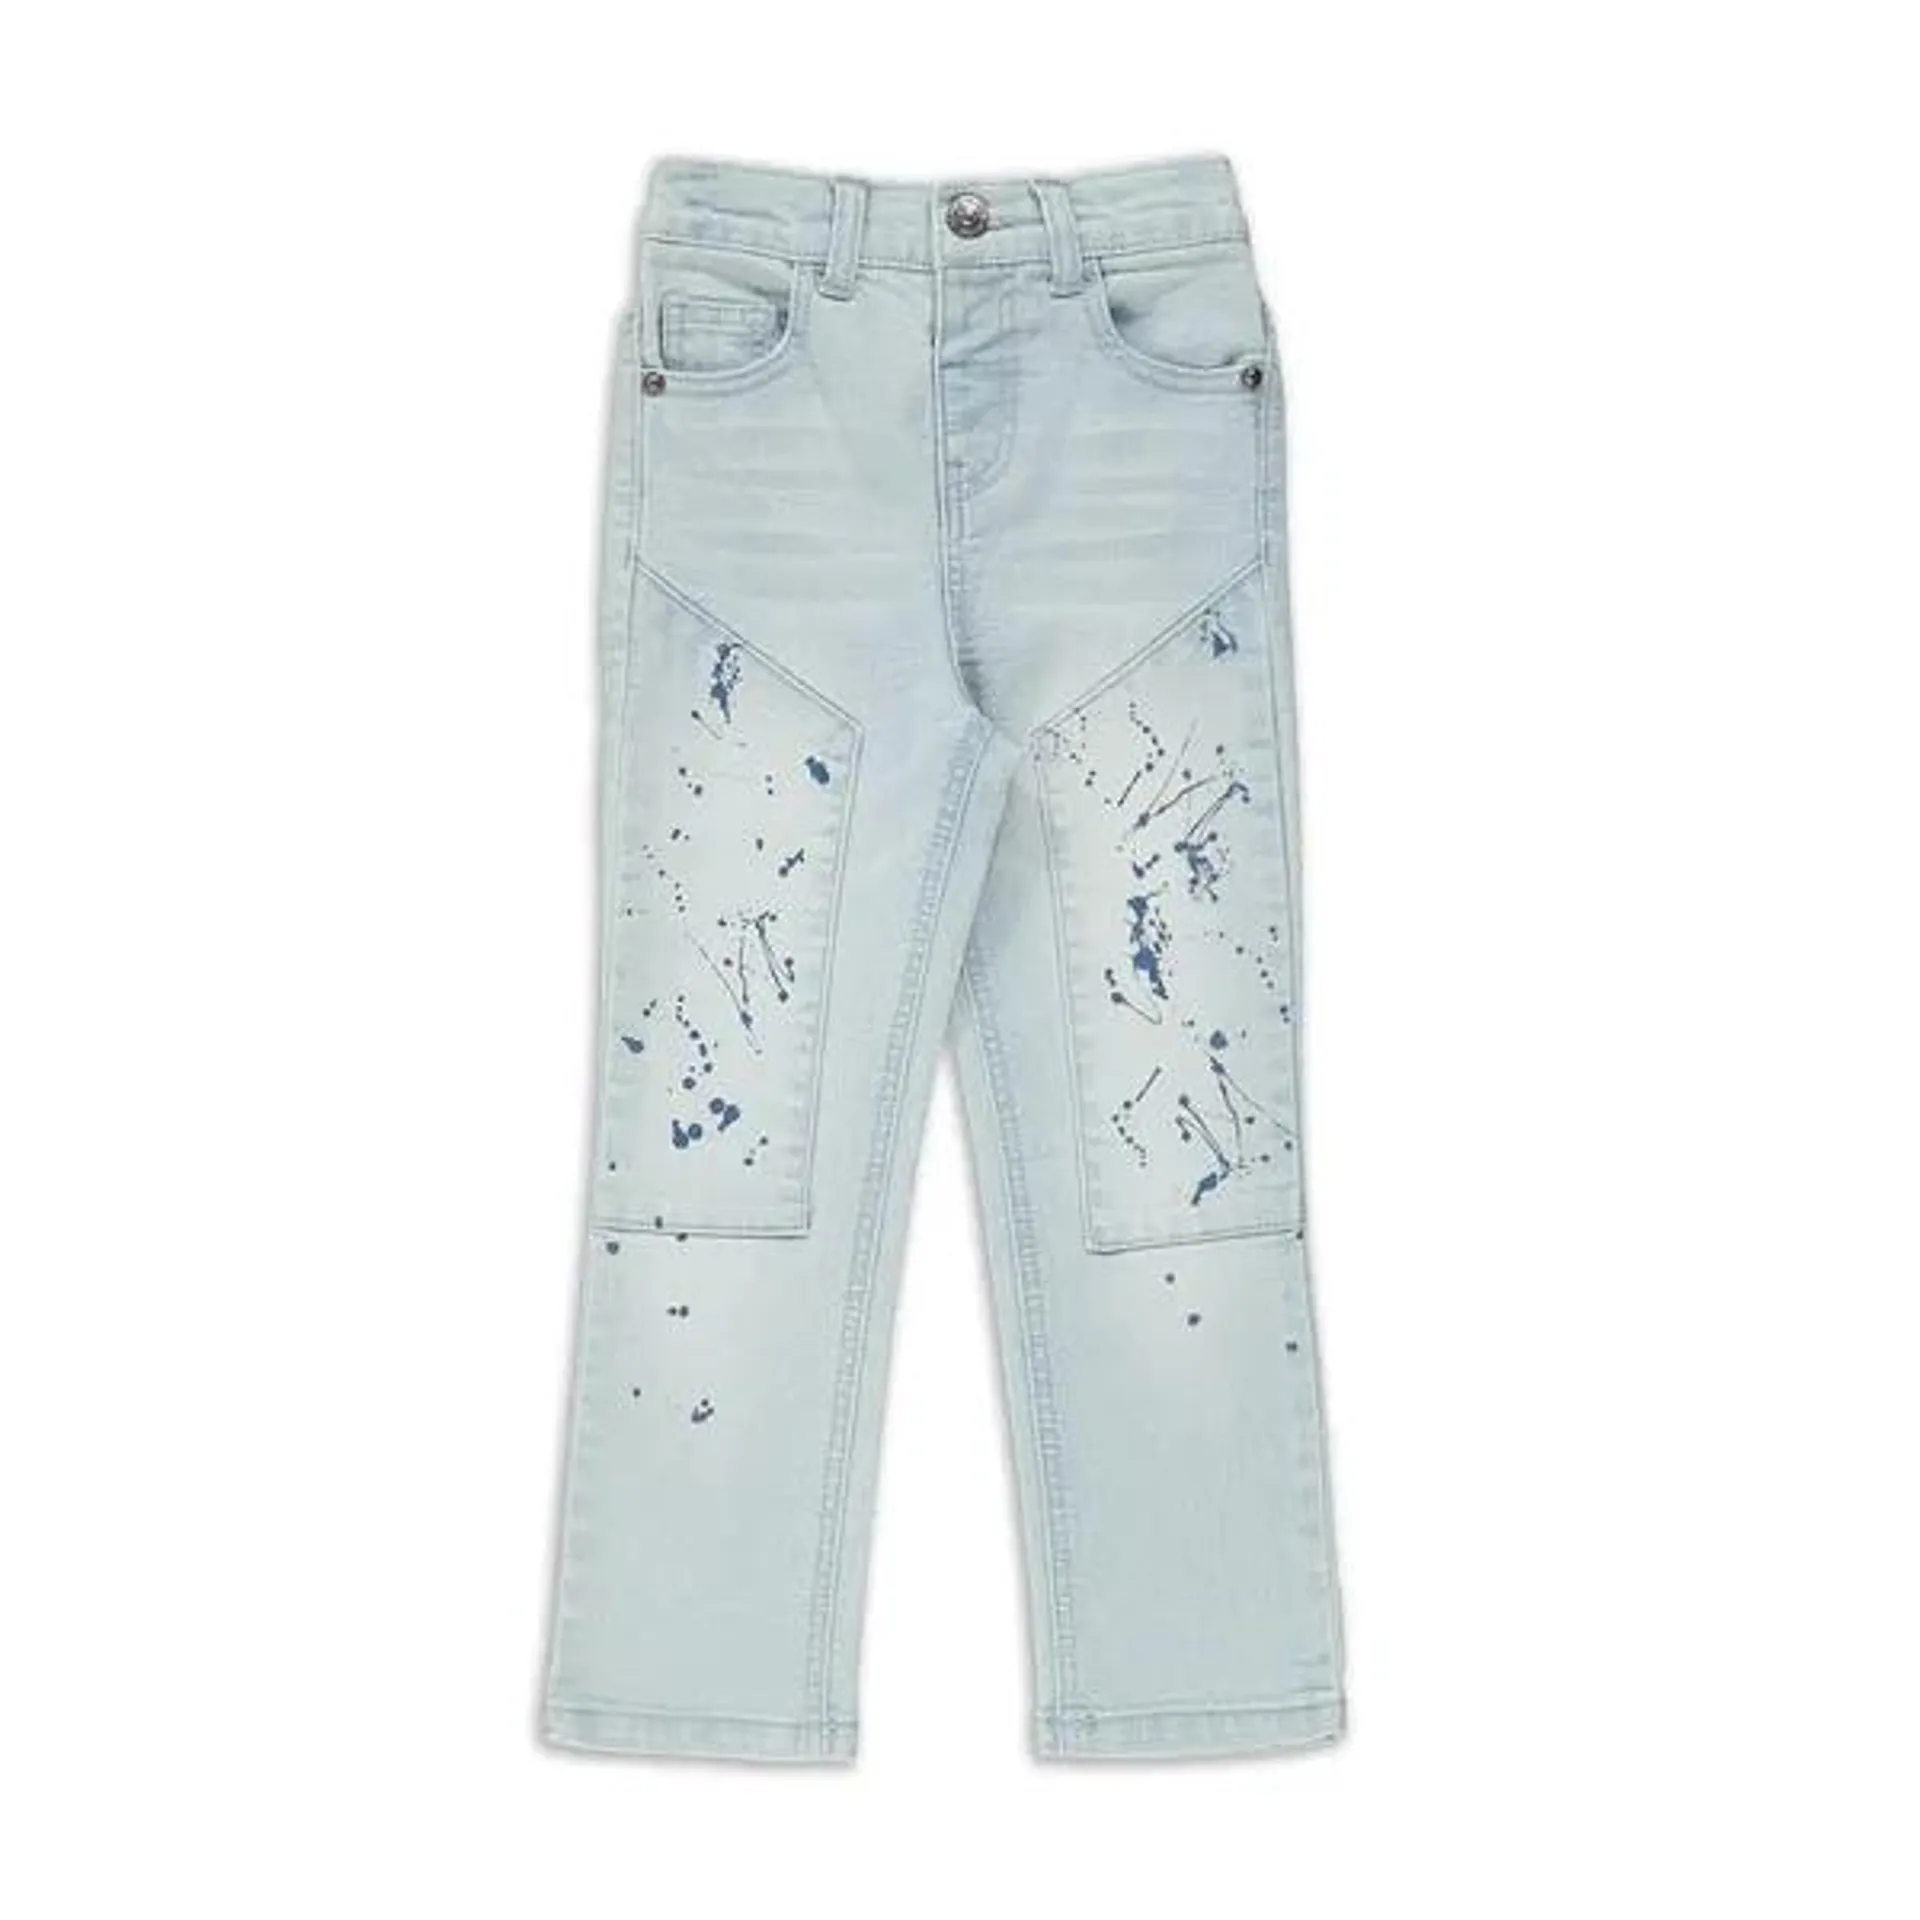 Splatter straight leg denim jeans light blue